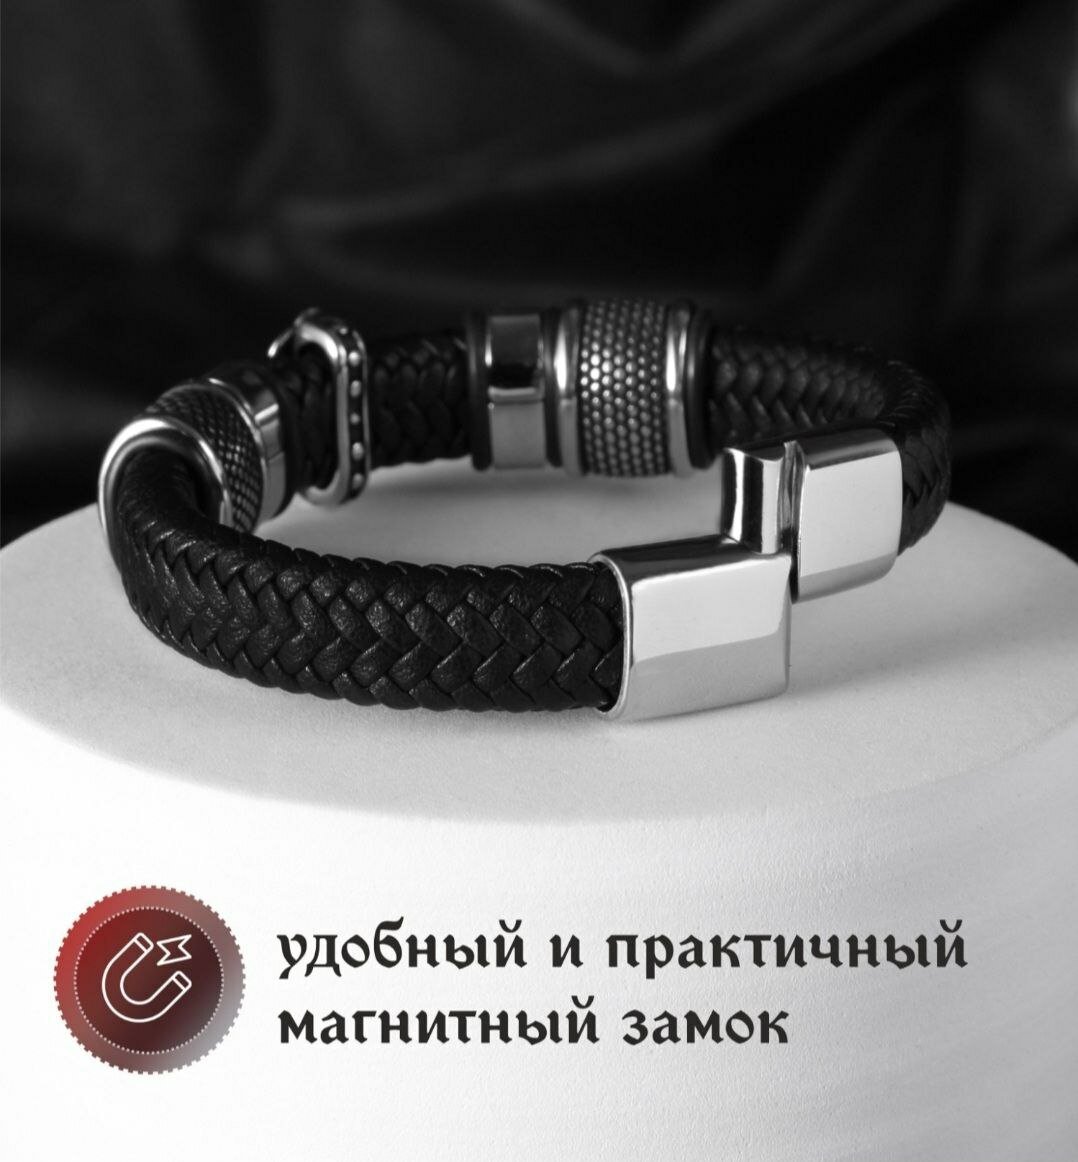 Славянский оберег, плетеный браслет Браслет мужской кожаный, бижутерия, украшение на руку, металл